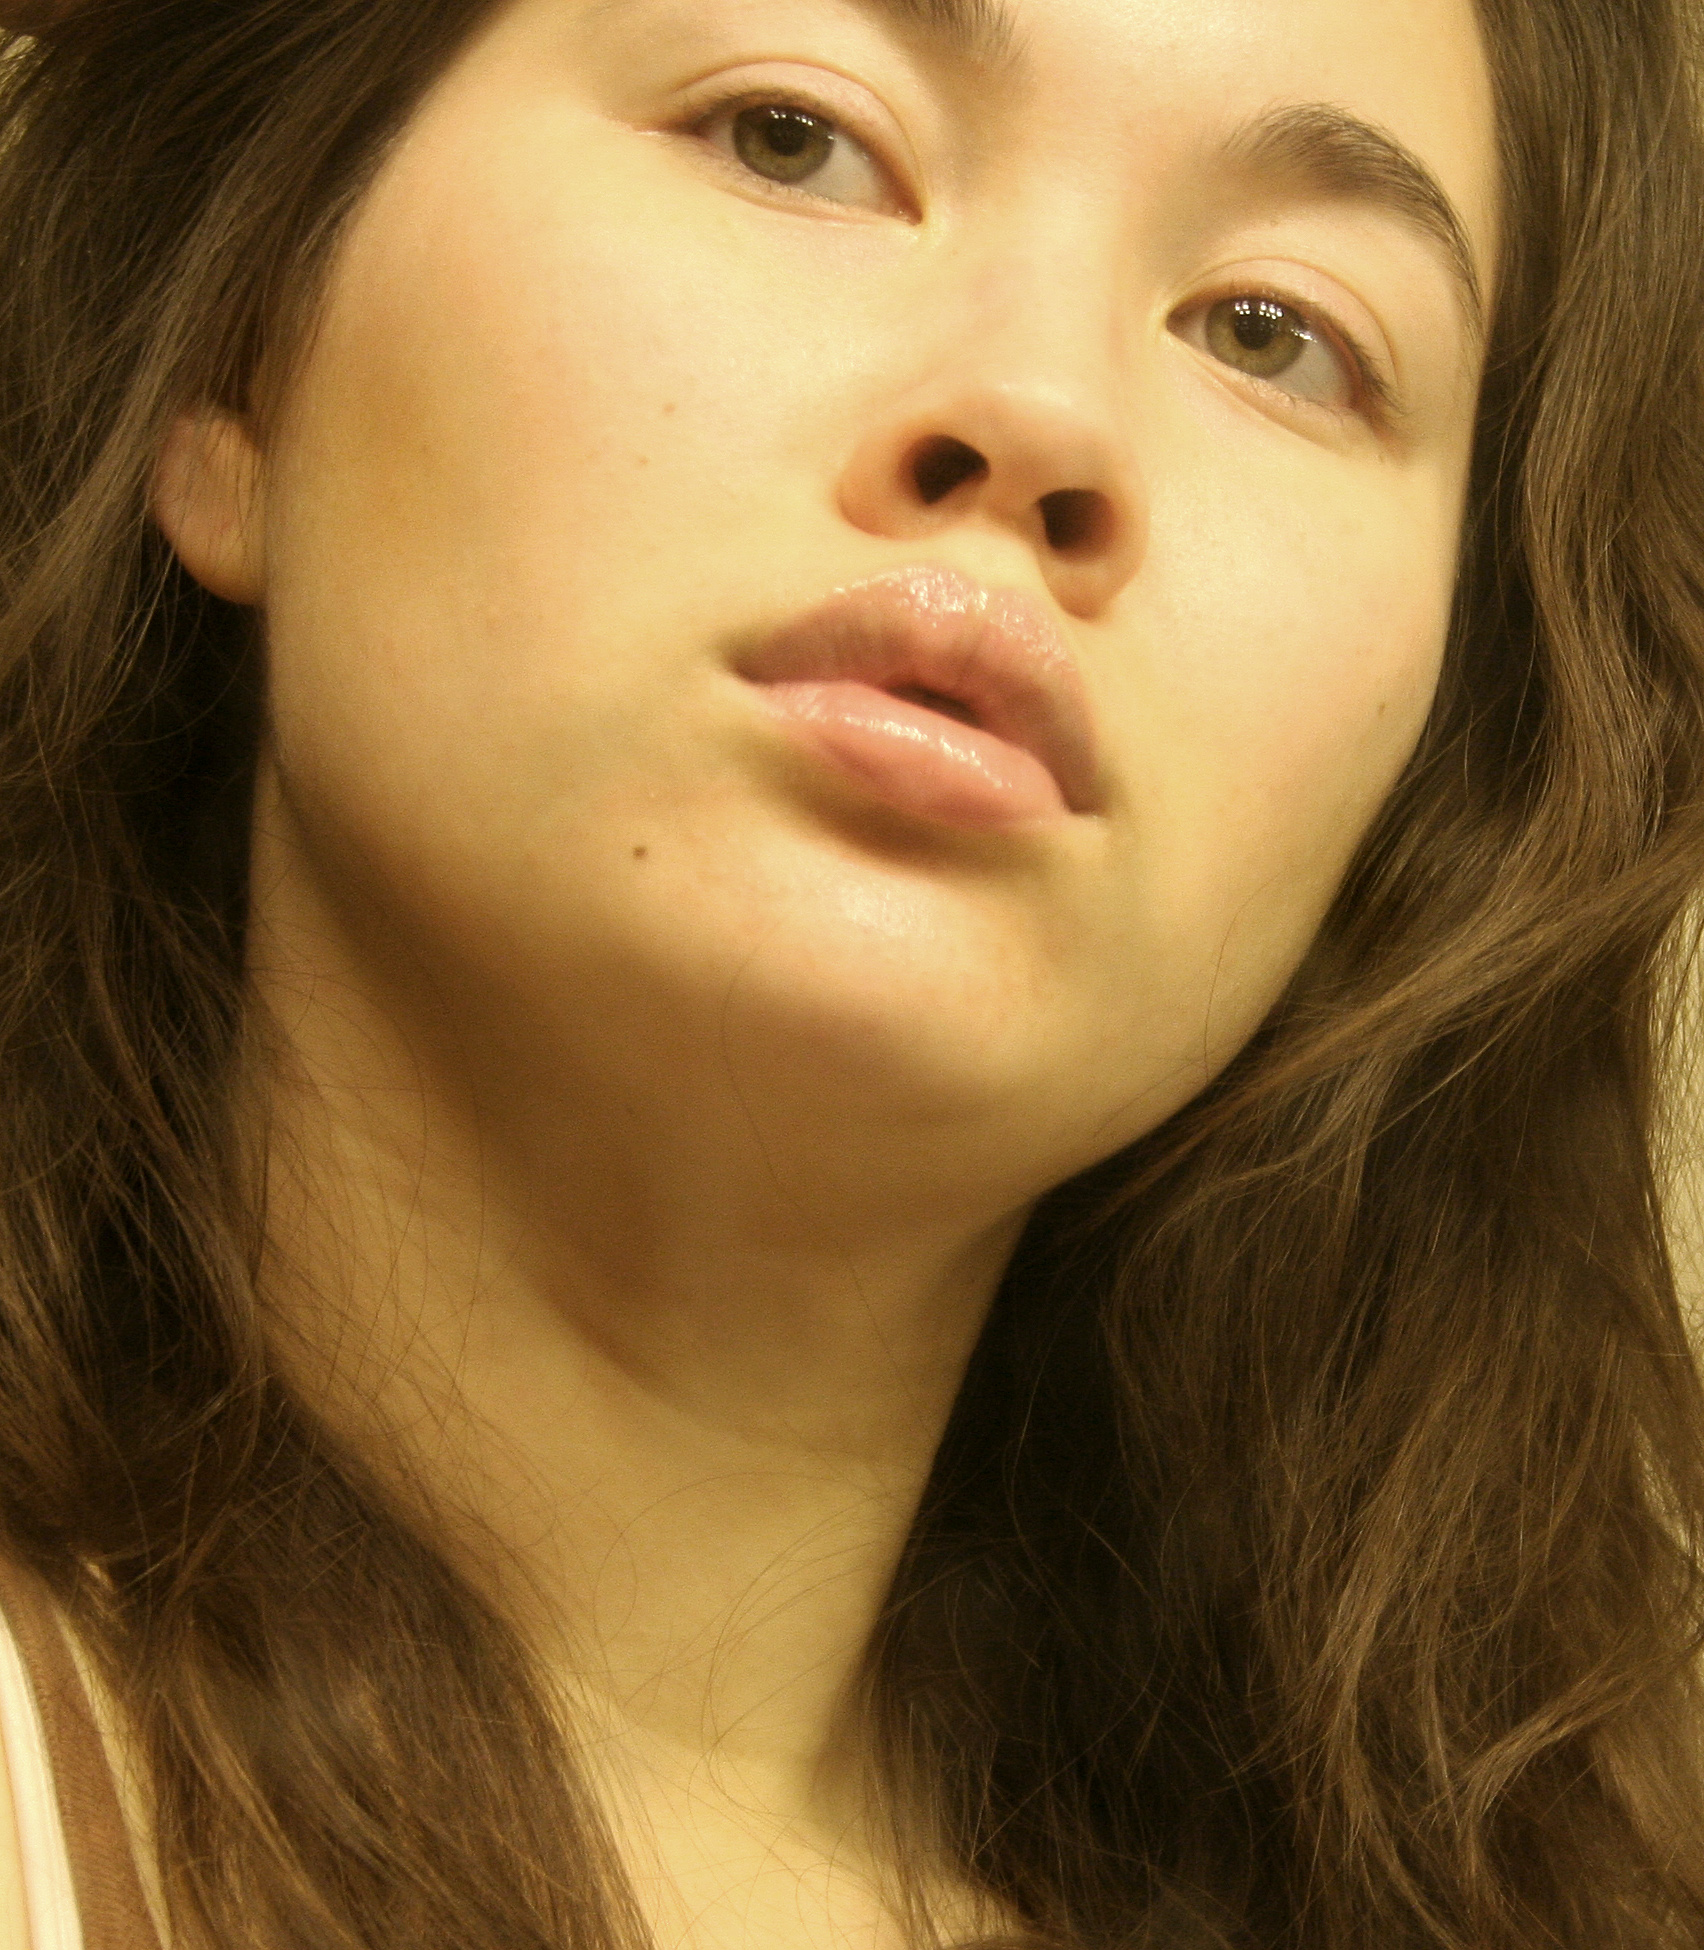 Young woman portrait photo